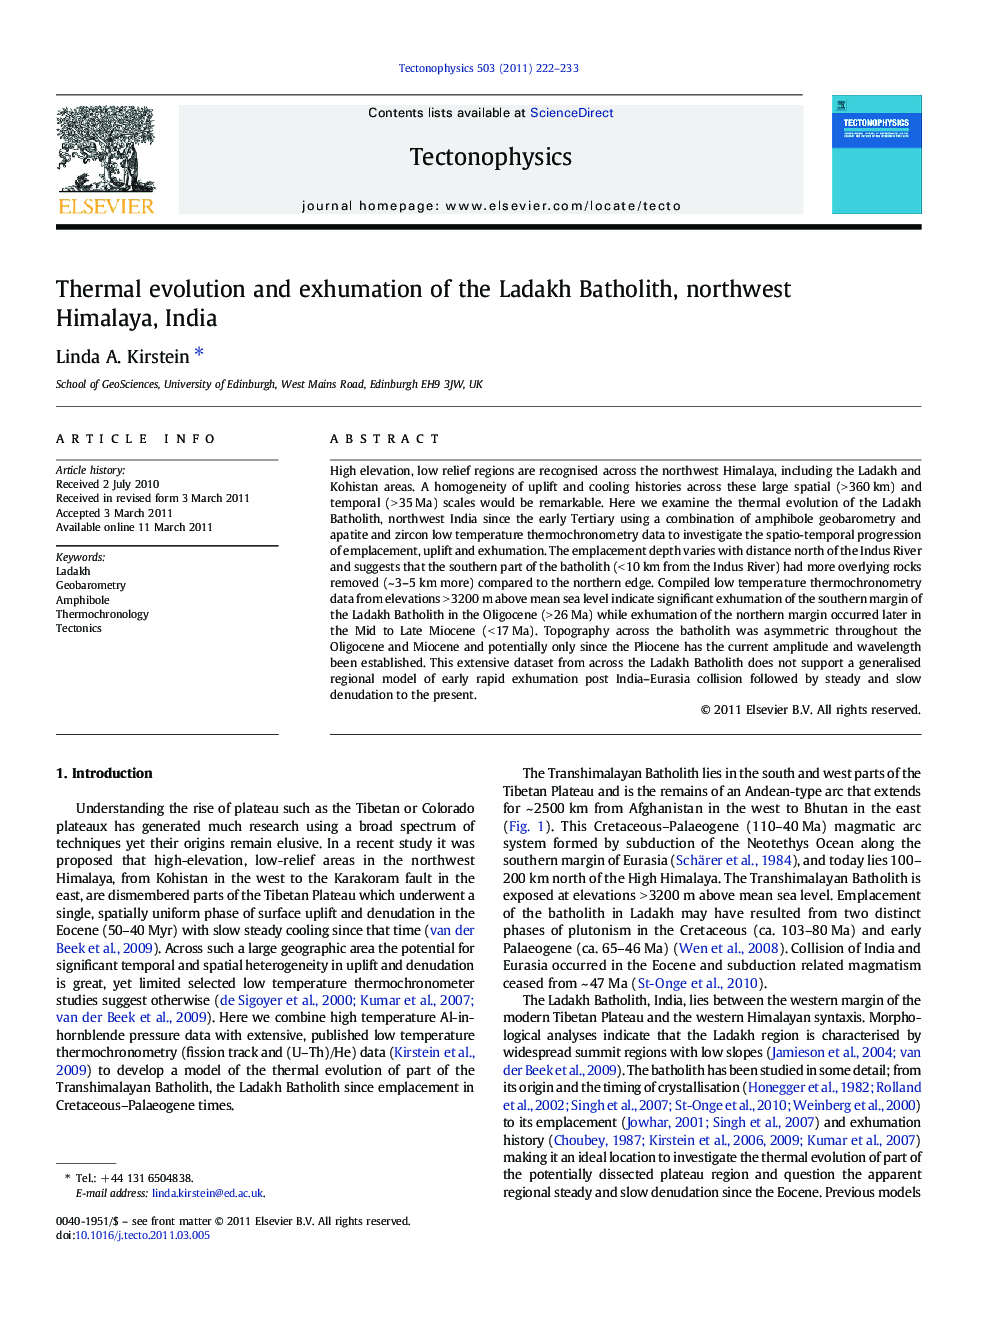 Thermal evolution and exhumation of the Ladakh Batholith, northwest Himalaya, India